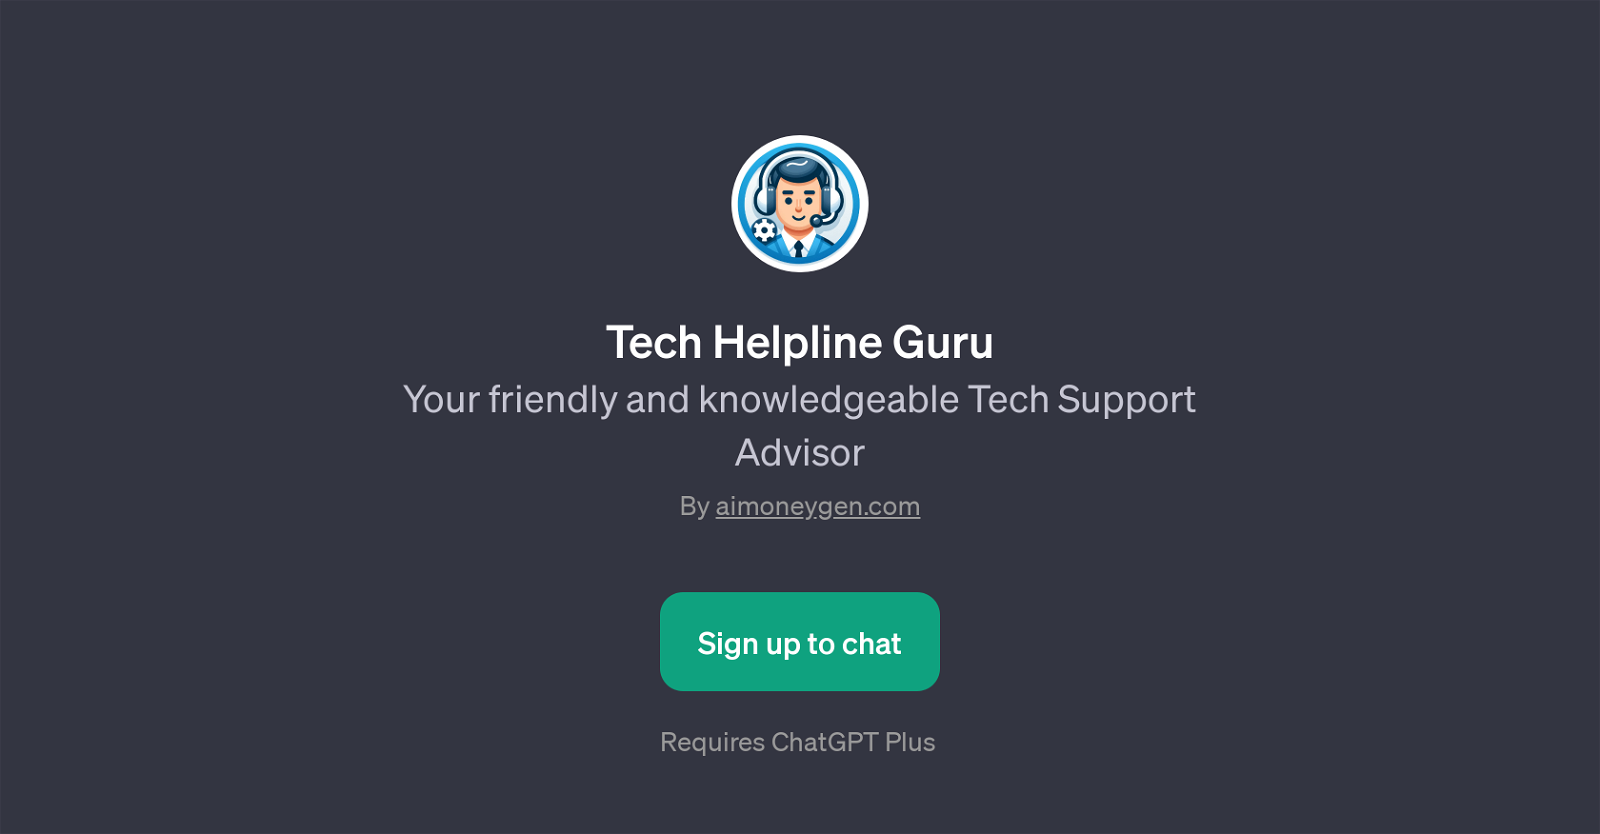 Tech Helpline Guru website